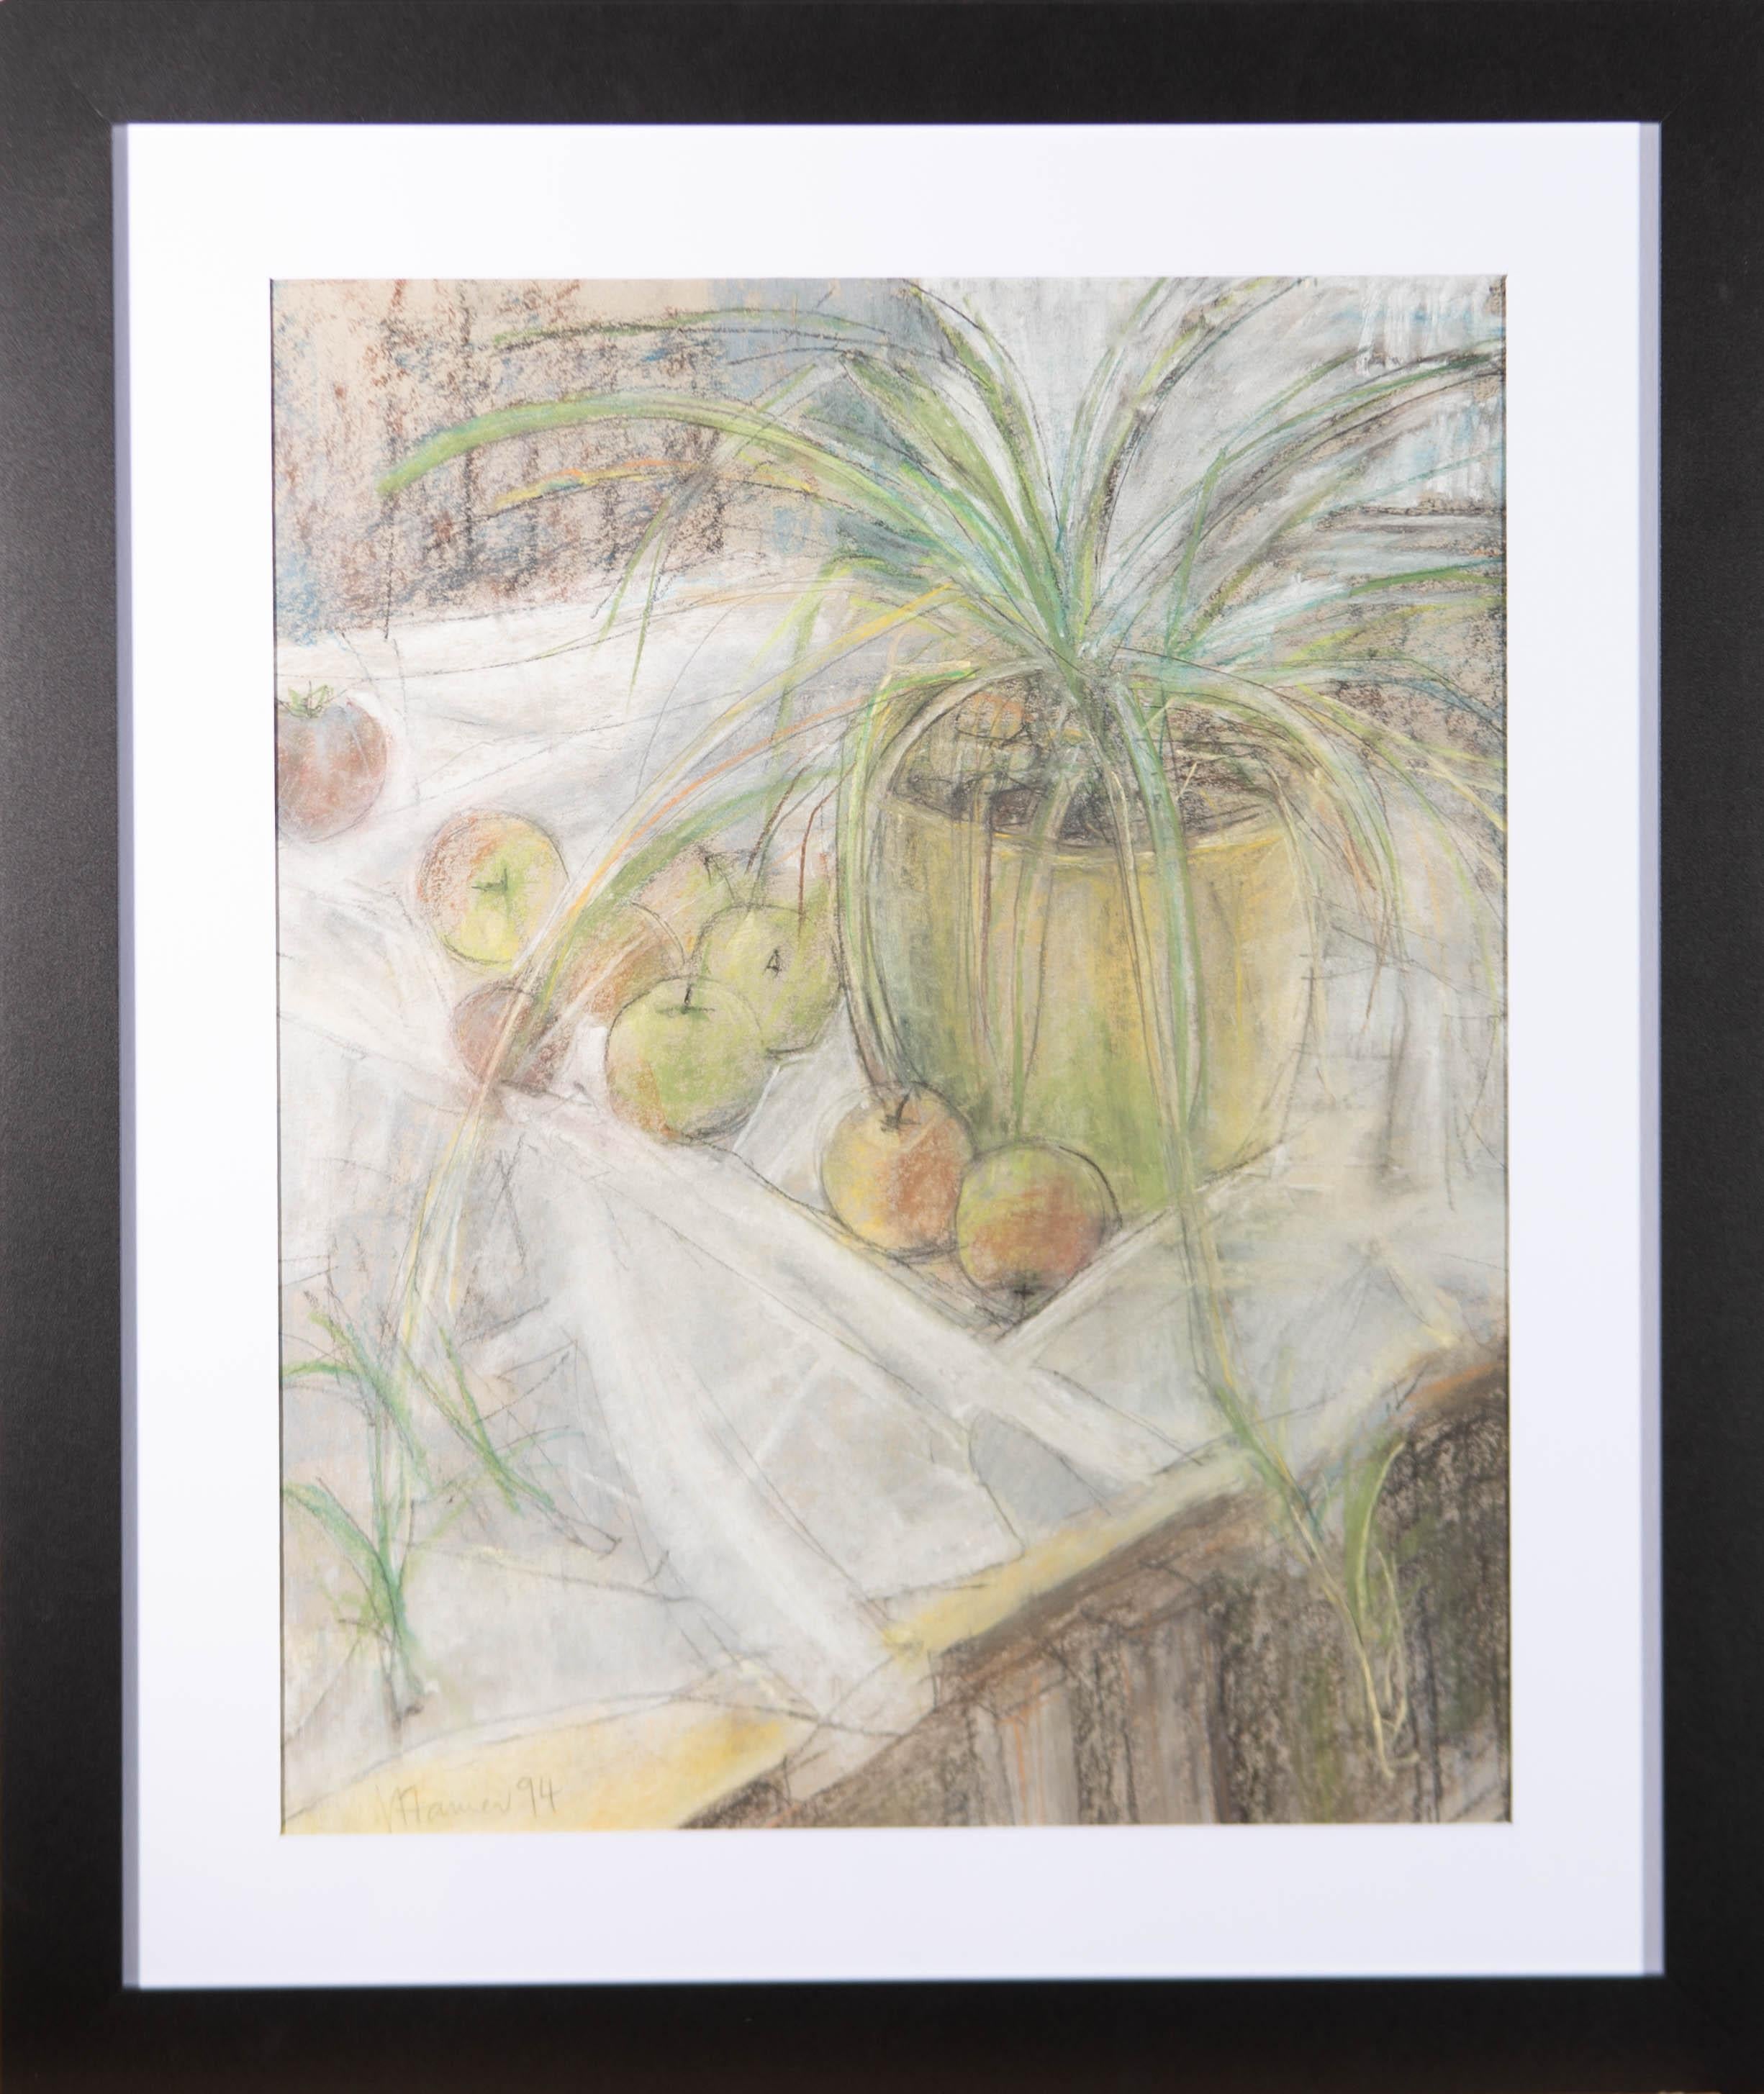 Un beau dessin au pastel de l'artiste britannique Val Hamer. La scène représente une nature morte composée d'une plante en pot et de plusieurs pommes. Par des traits grossiers, l'artiste a su exprimer la nature à la fois simple et charmante de ce